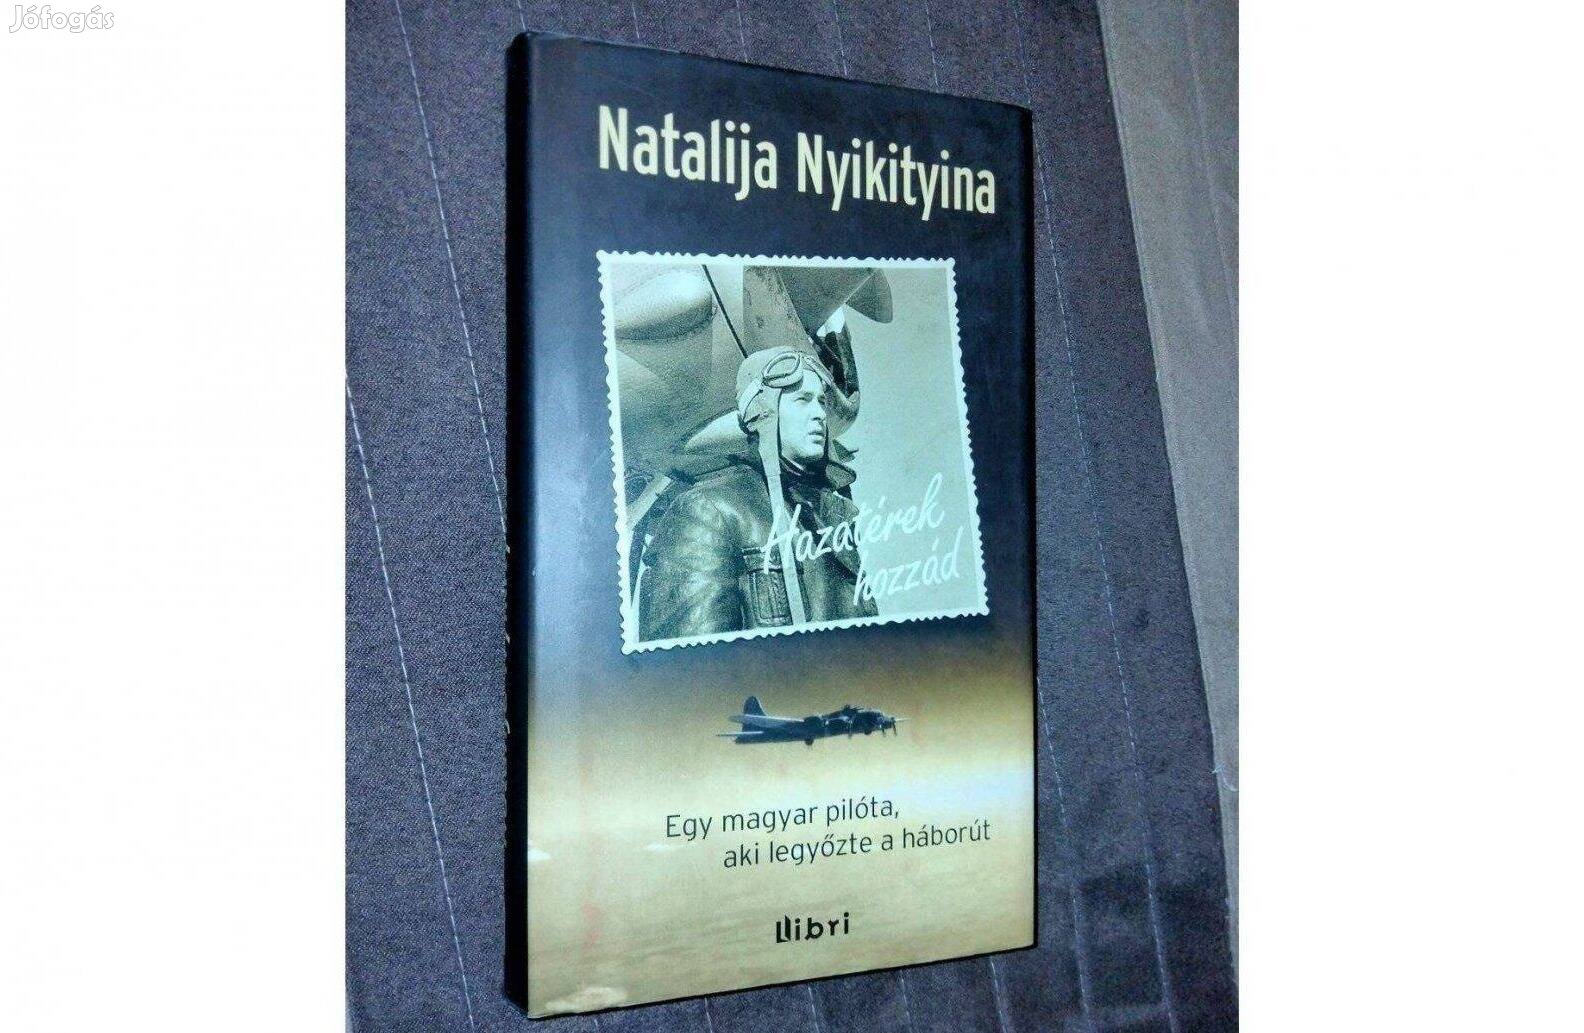 Natalija Nyikityina Hazatérek hozzád - Egy magyar pilóta, aki legyőzte